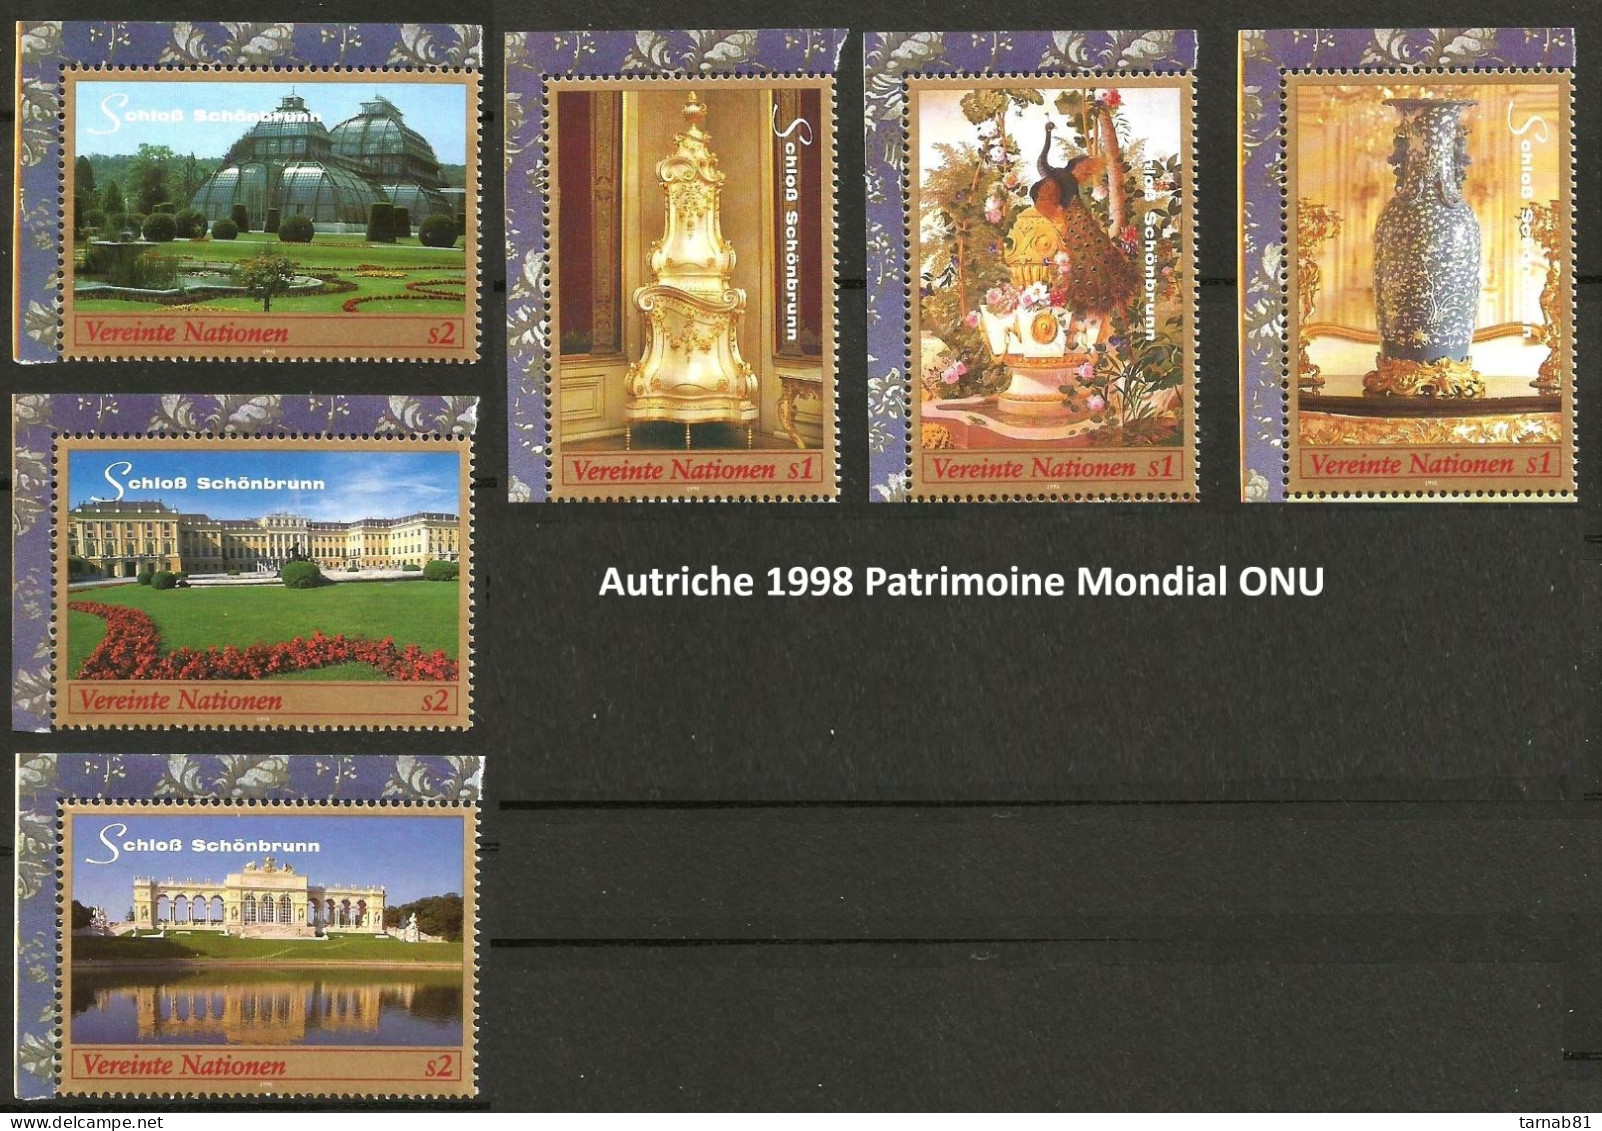 ONU Nations Unies Complet Vienne **  1997 à 2007 2009 2011 à 2019  2020 2021 2022 2023 Patrimoine Mondial - Unused Stamps